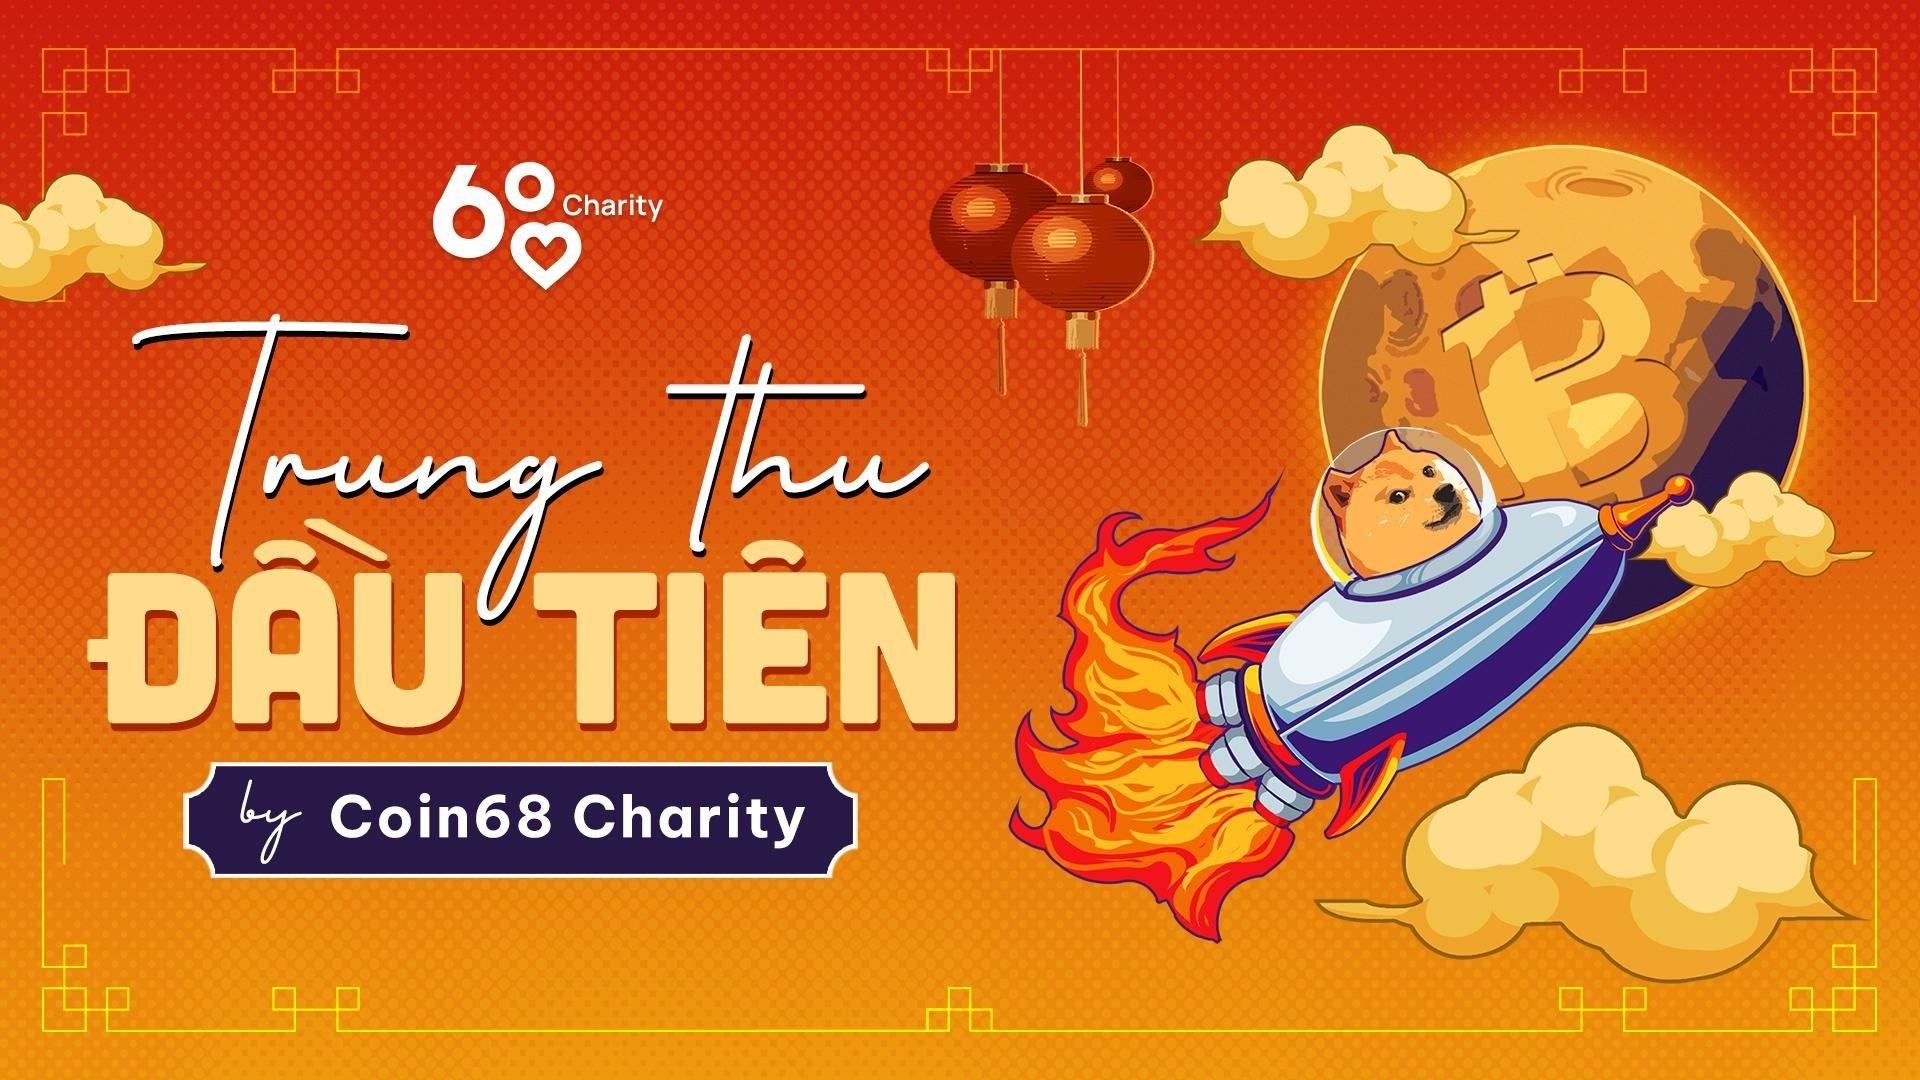 coin68-charity-project-trung-thu-dau-tien-cho-177-em-nho-tai-co-nhi-vien-thien-binh